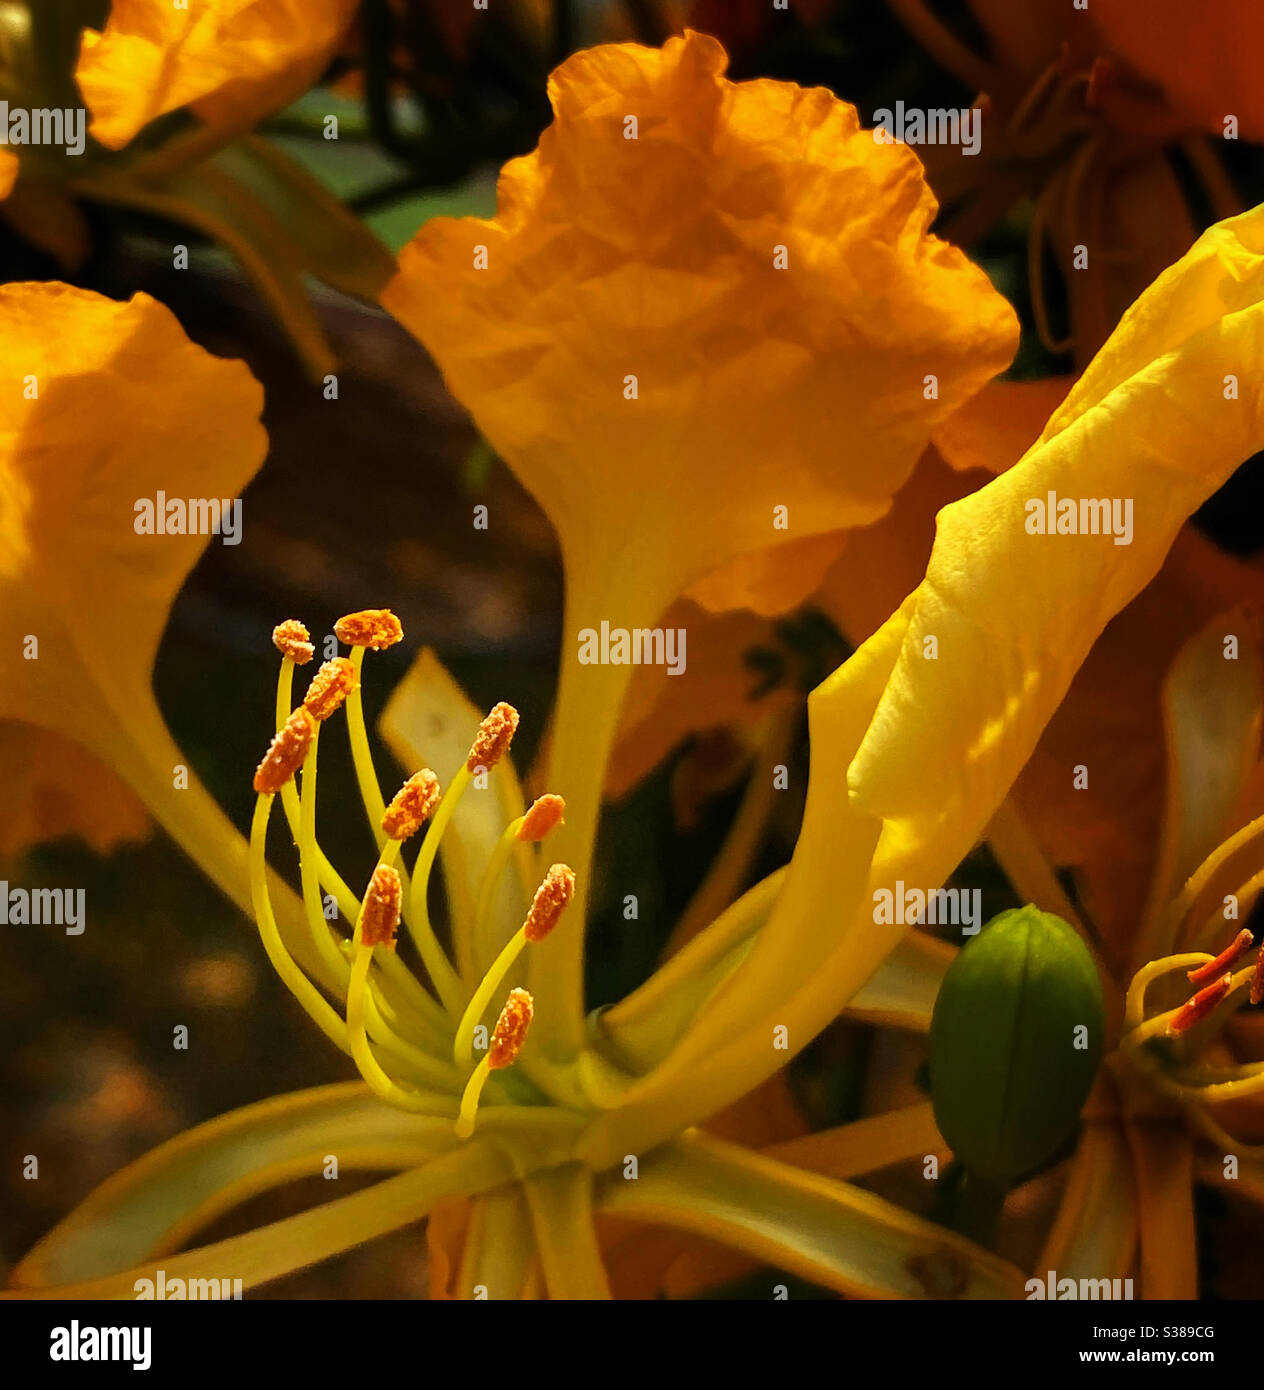 Primo piano delle stampini e delle antere di un fiore giallo poinciana Foto Stock